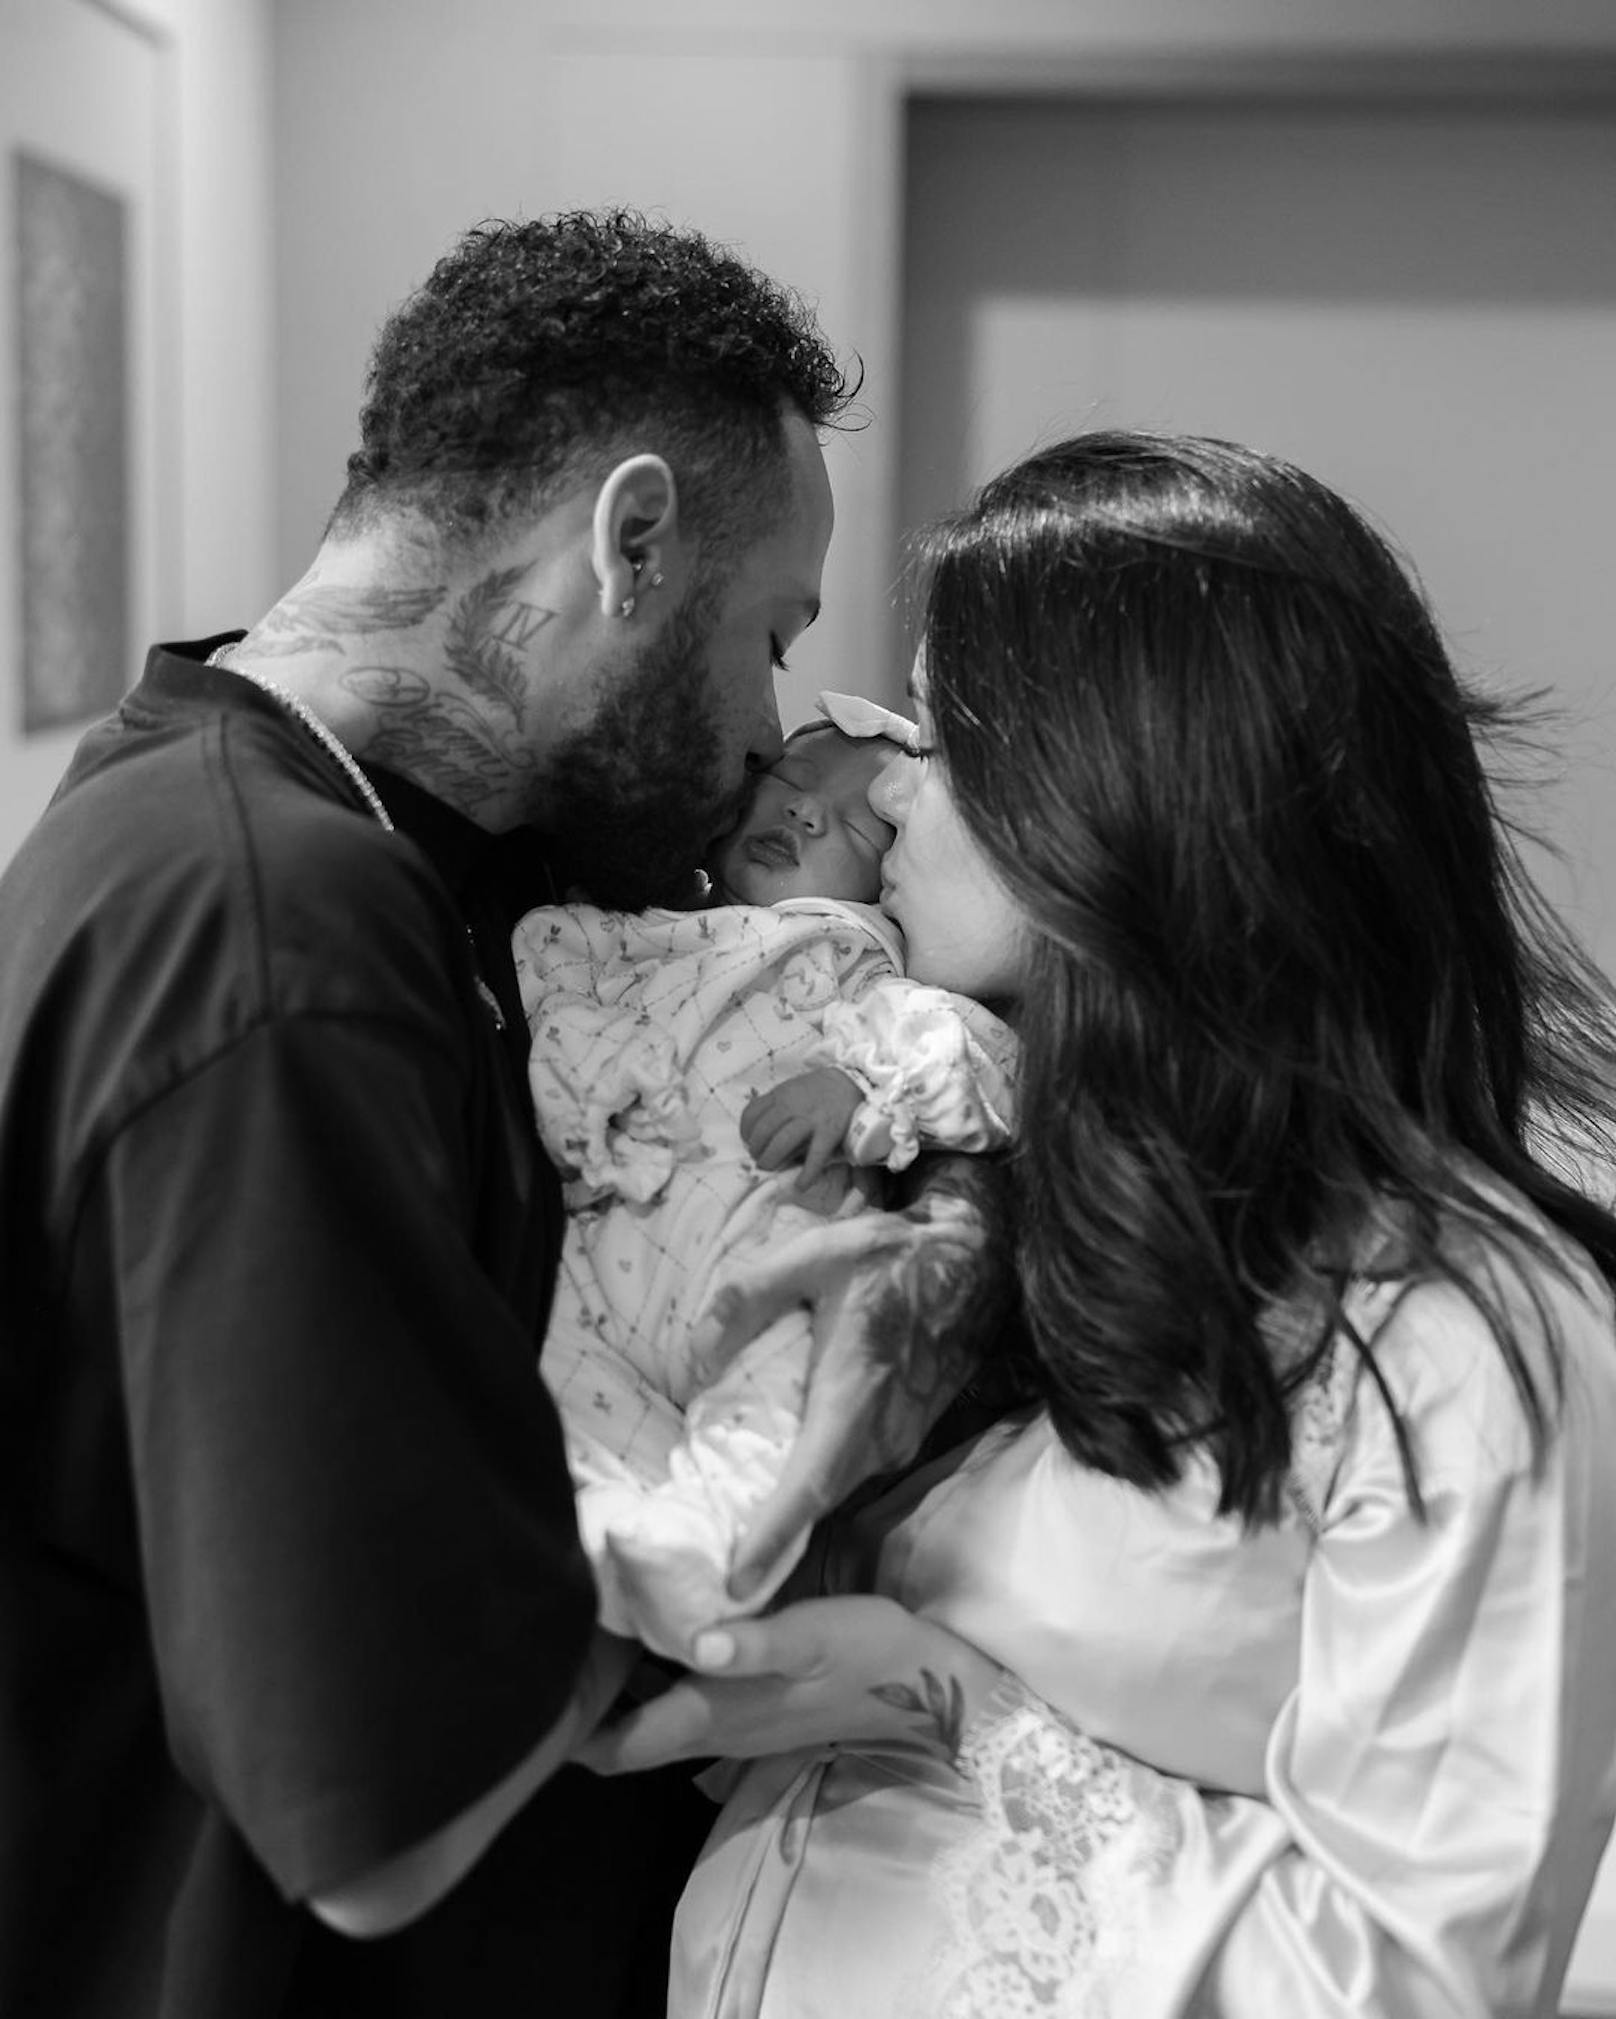 Der brasilianische Kicker Neymar jr. freut sich über die Geburt seines Kindes. Model Bruna Biancardi und der 31-Jährige nennen ihre Tochter Mavie.